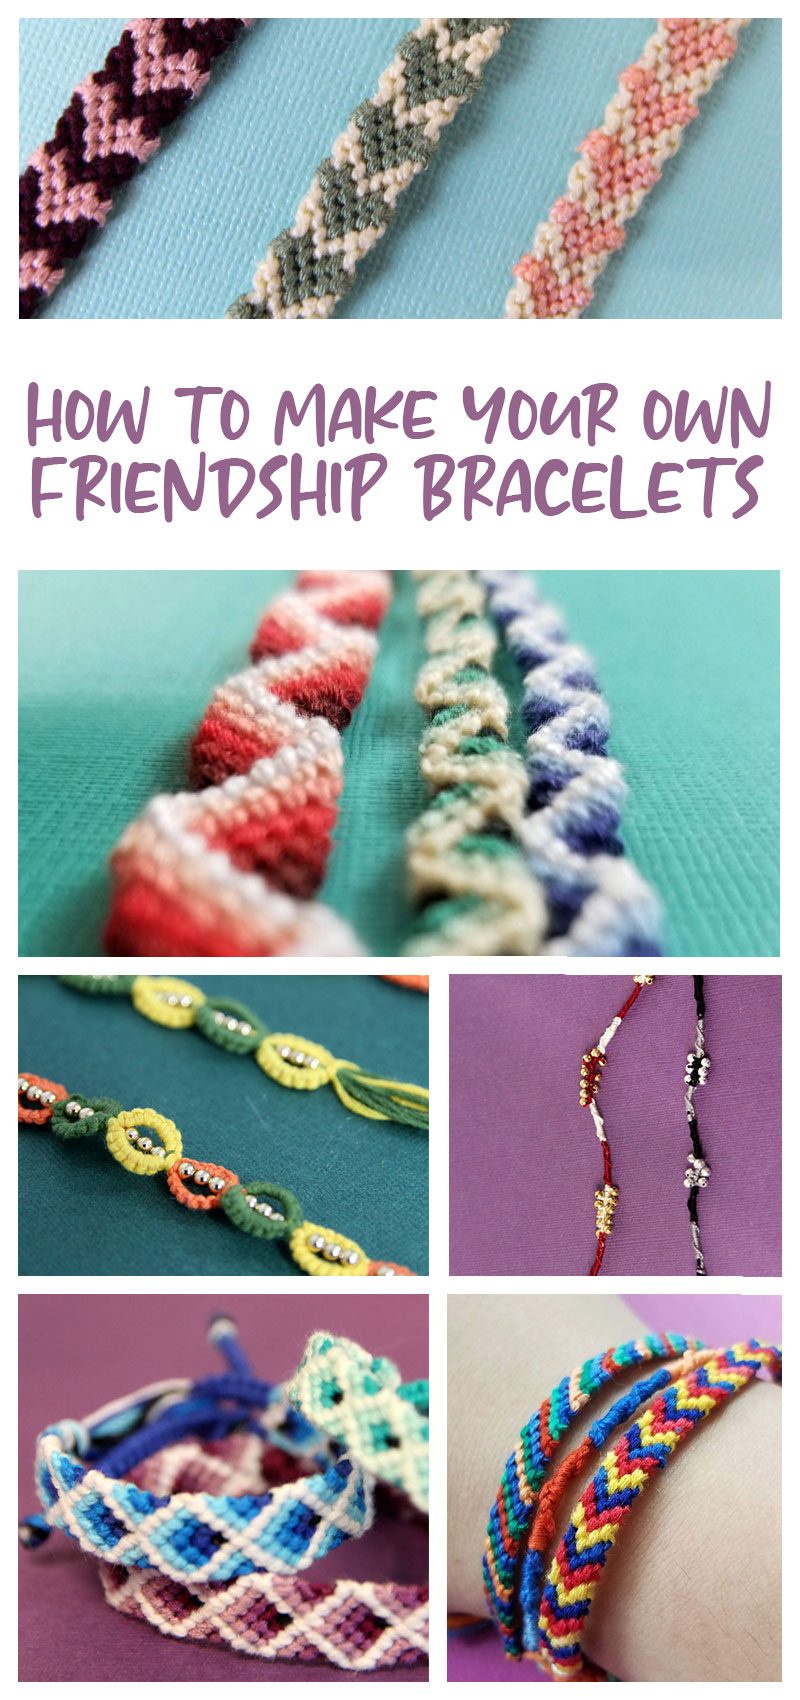 5 Beginner Friendly Friendship Bracelets Tutorial - Written By Kel